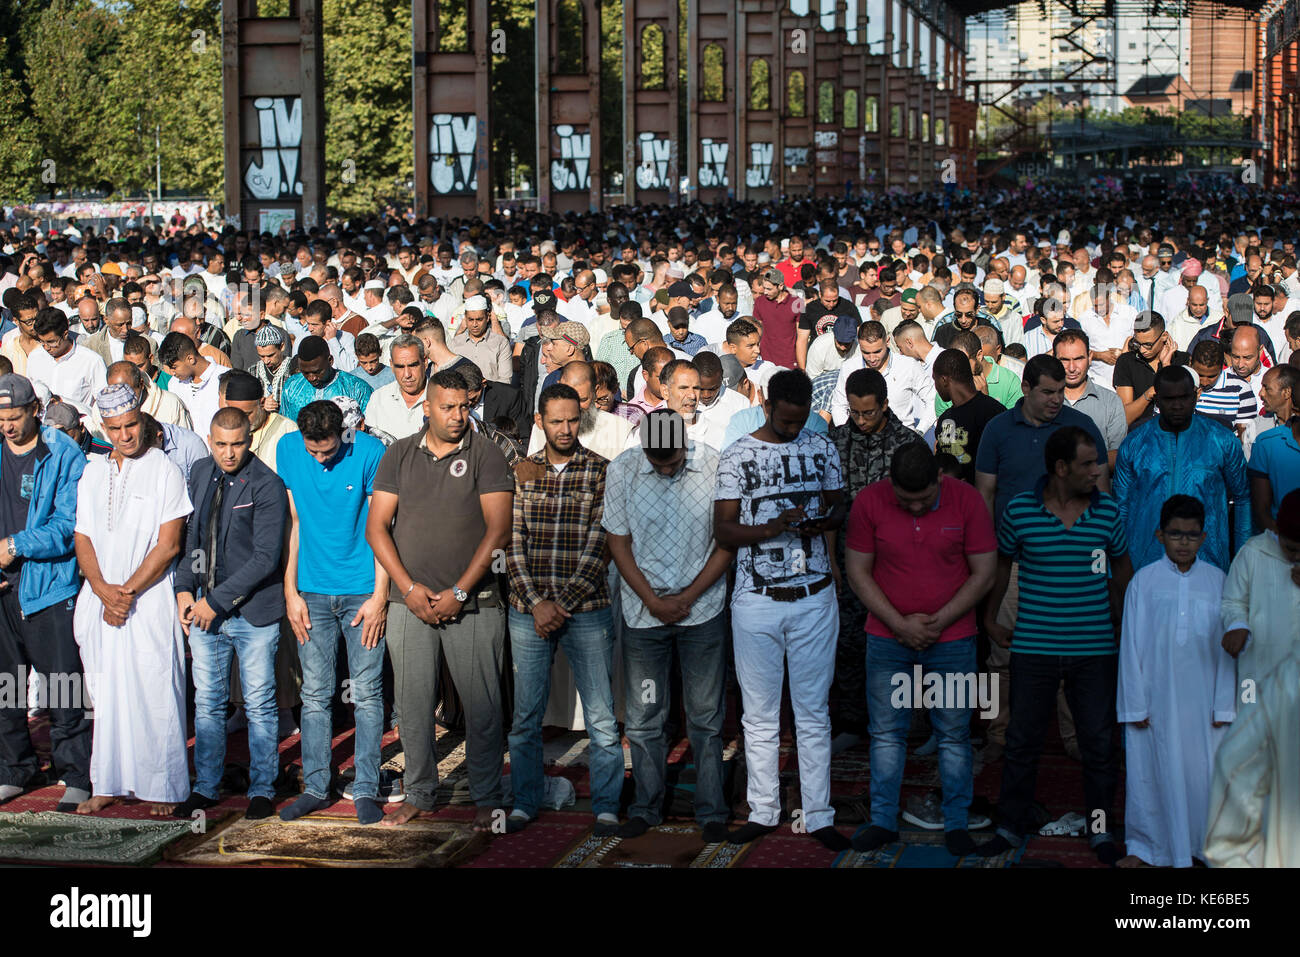 Turin, Italy - September 1, 2017: Islamic Sacrifice Festival at Dora Park in Turin, Italy Stock Photo